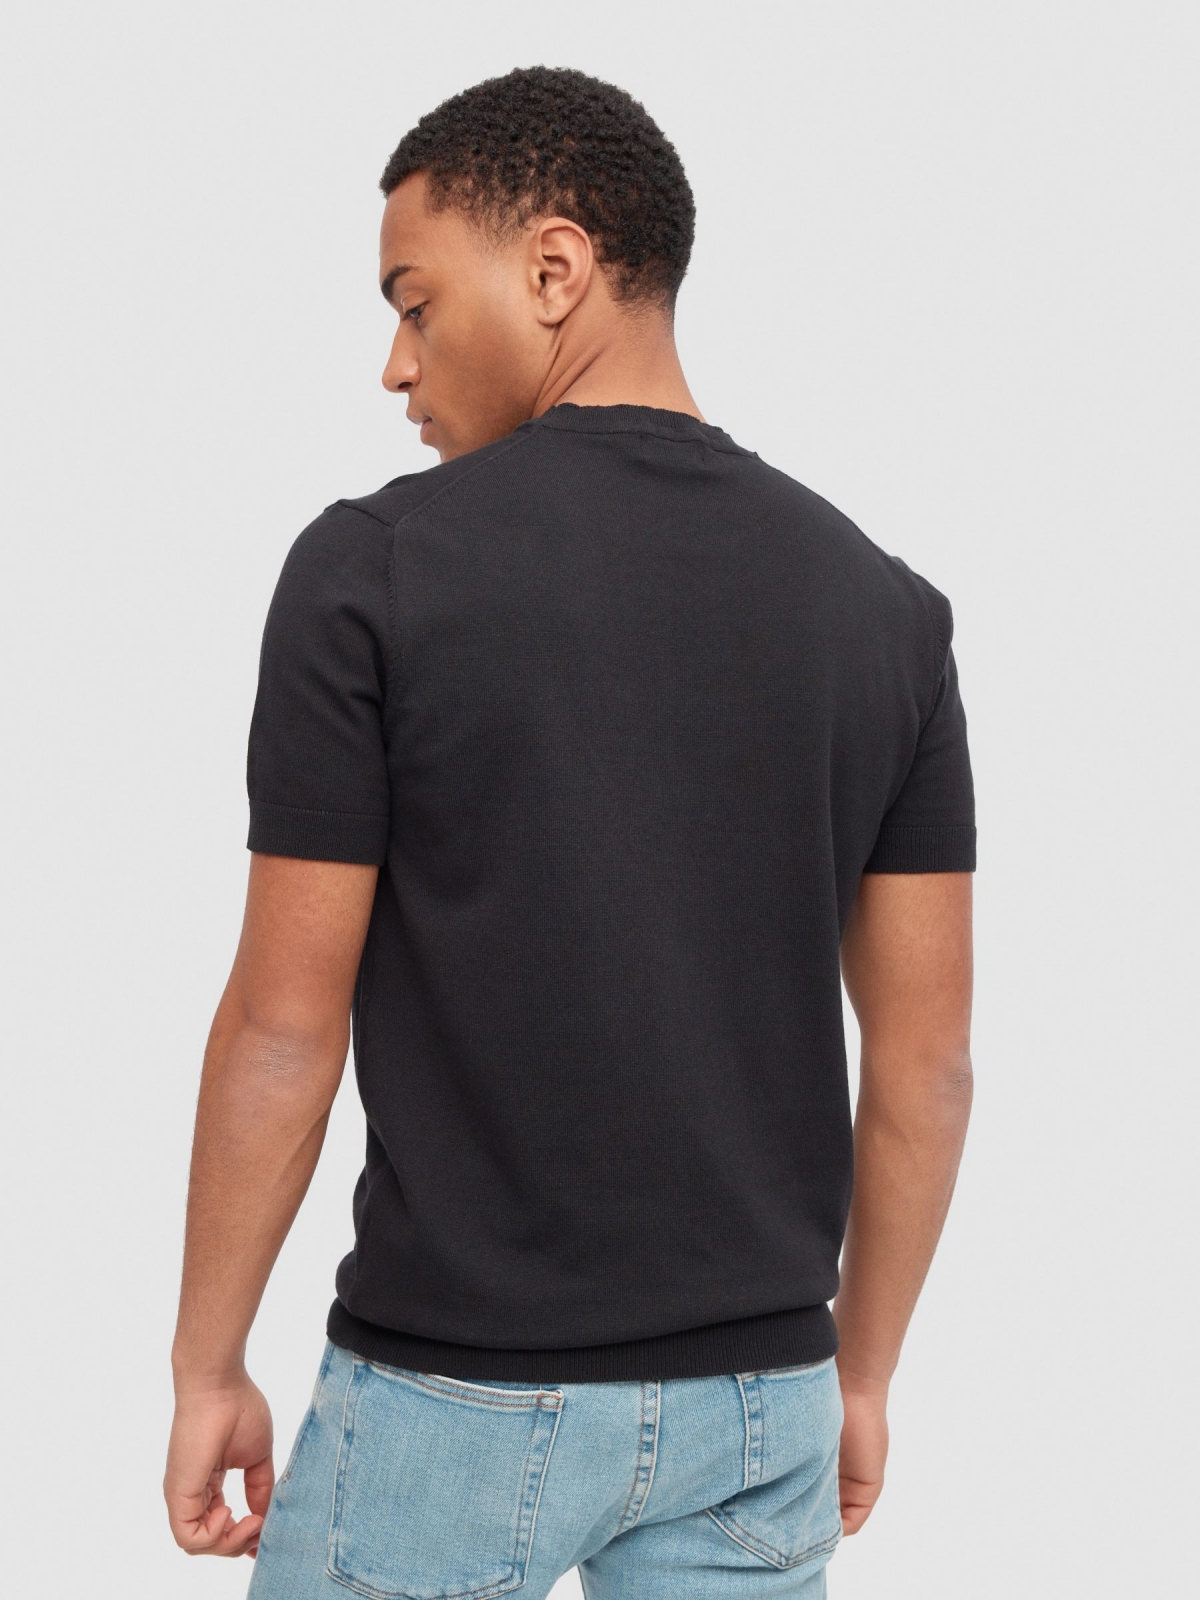 T-shirt tricotada básica preto vista meia traseira